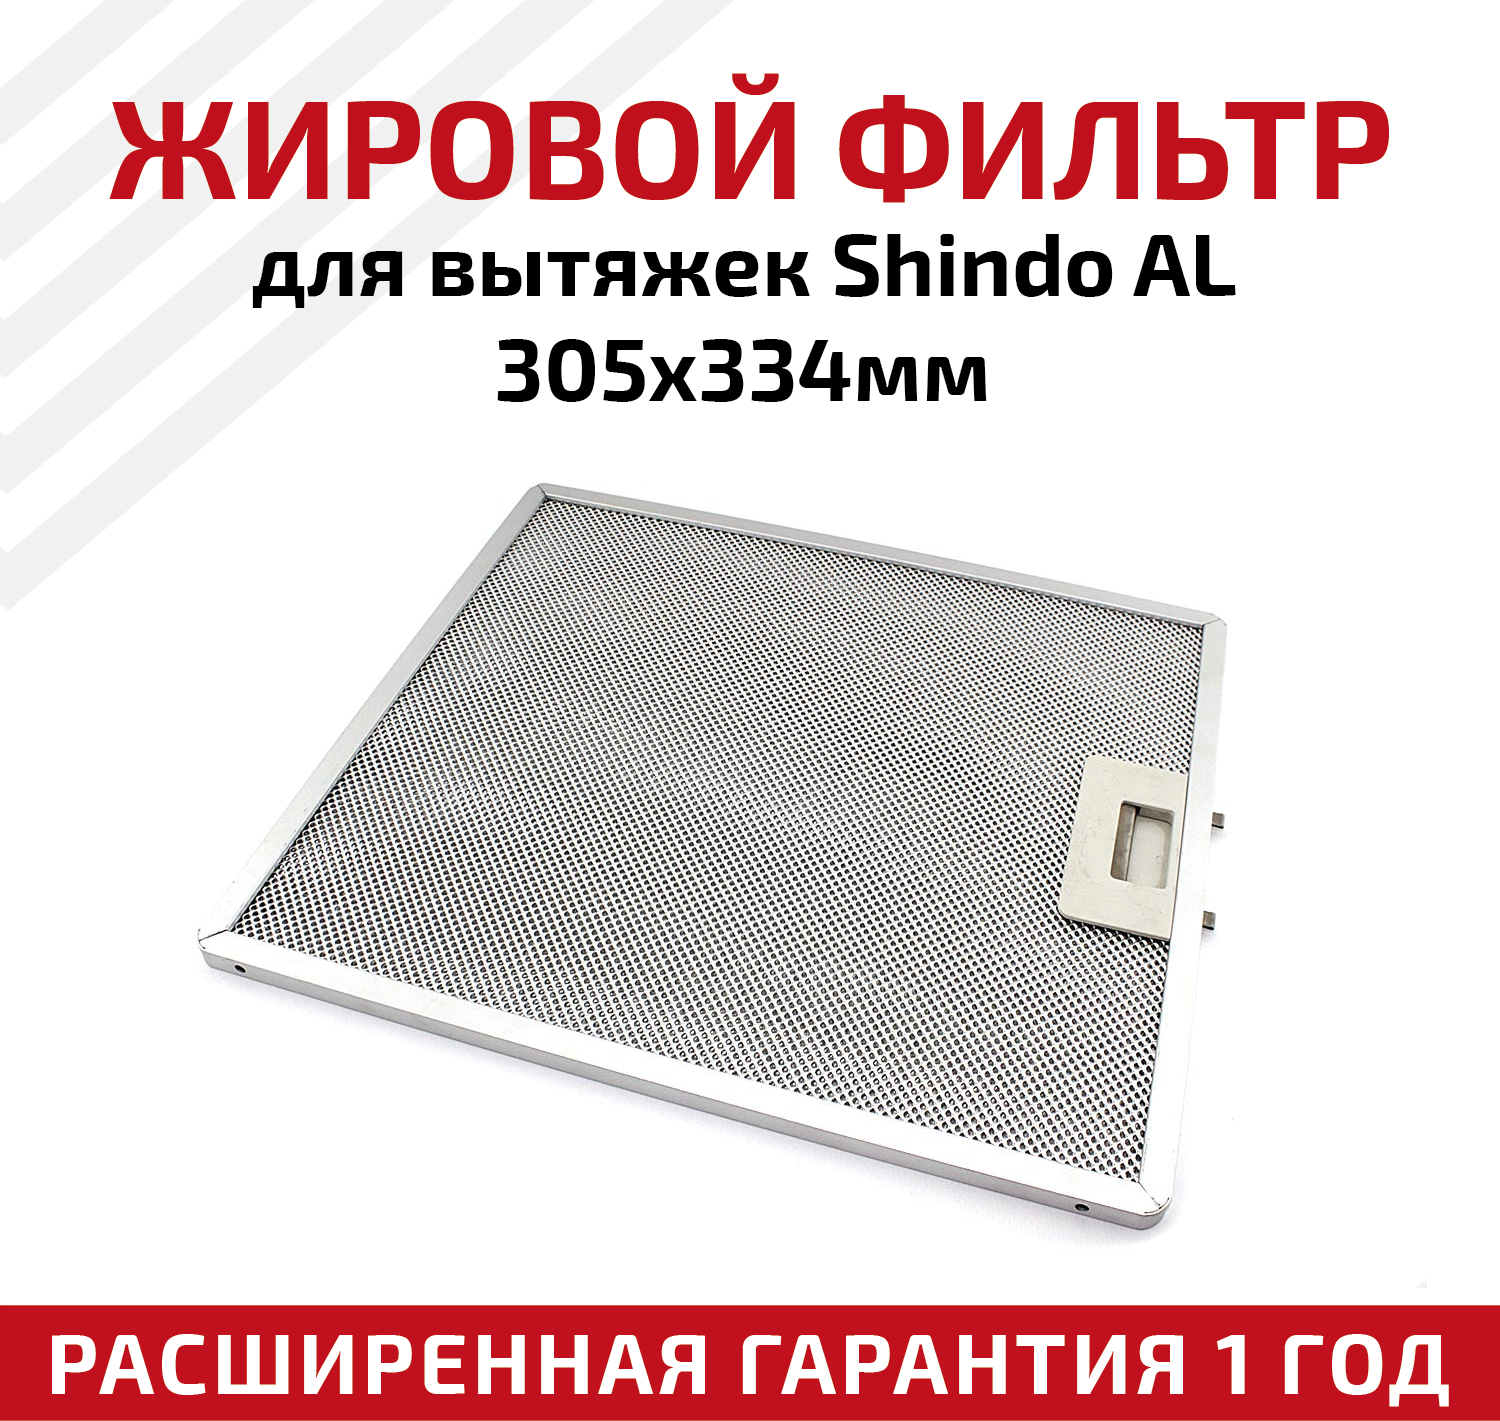 Жировой фильтр (кассета) алюминиевый (металлический) рамочный для кухонных вытяжек Shindo AL, многоразовый, 305х334мм